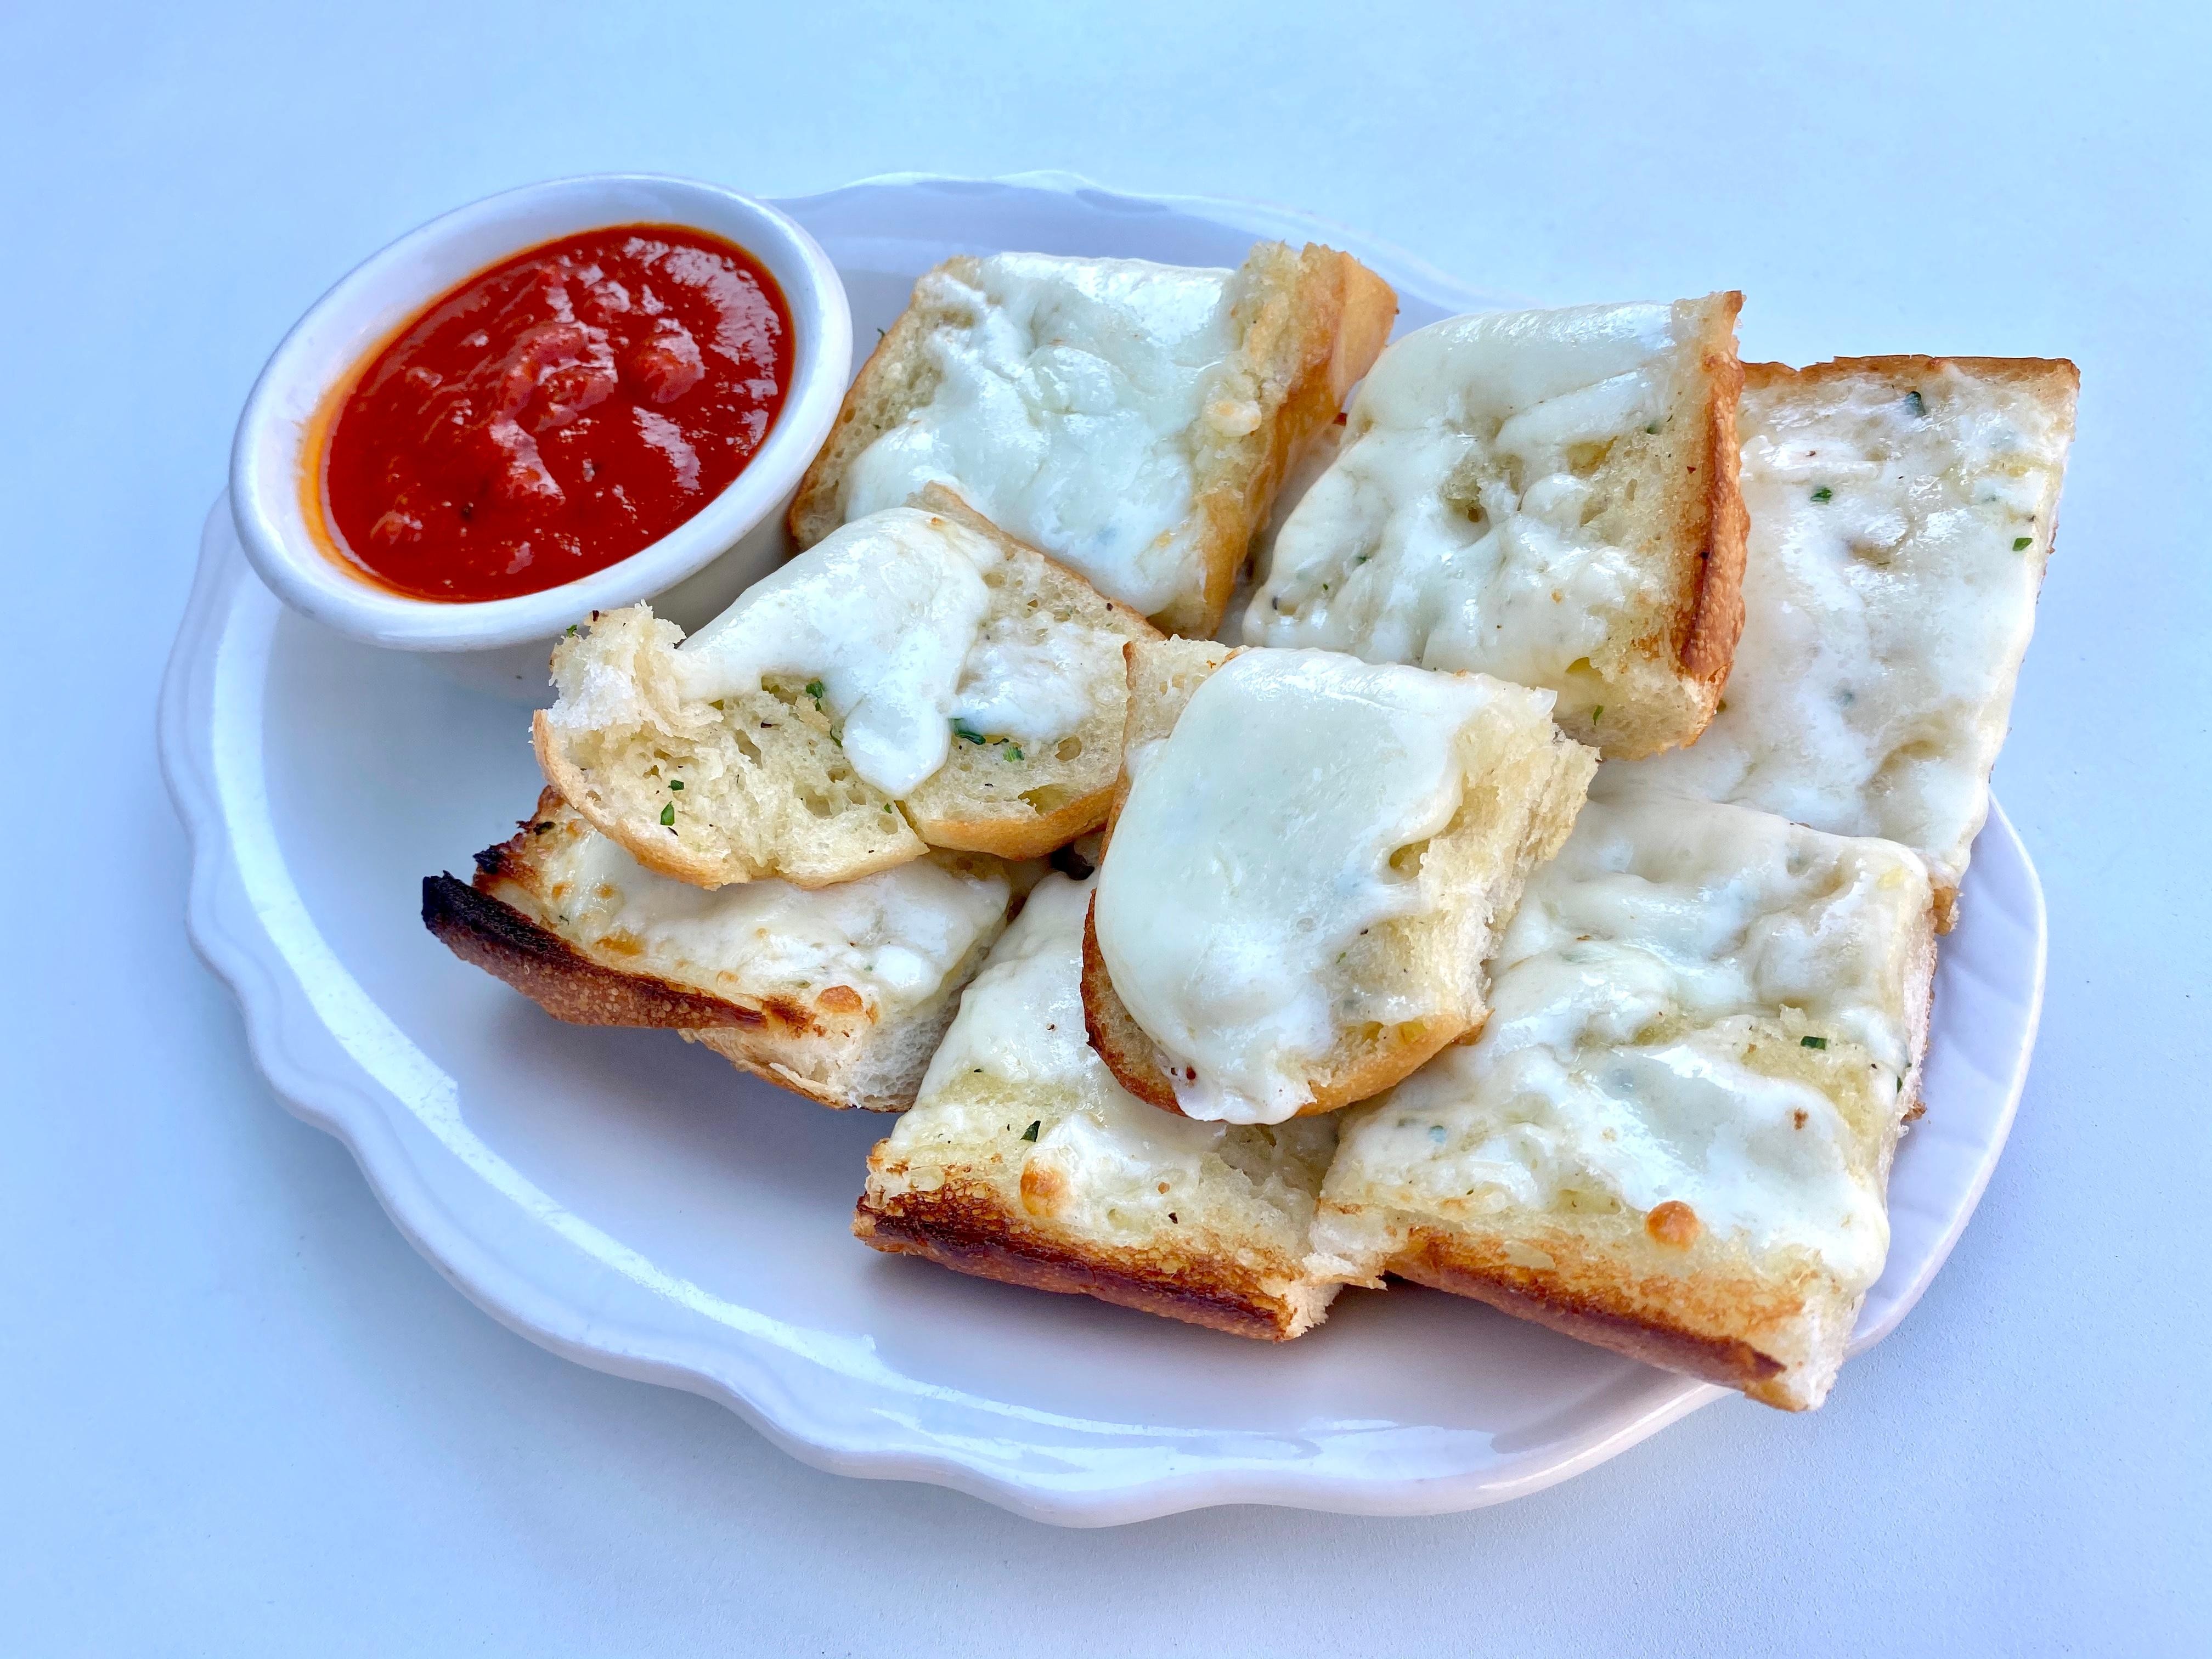 L - Garlic Bread with Mozzarella